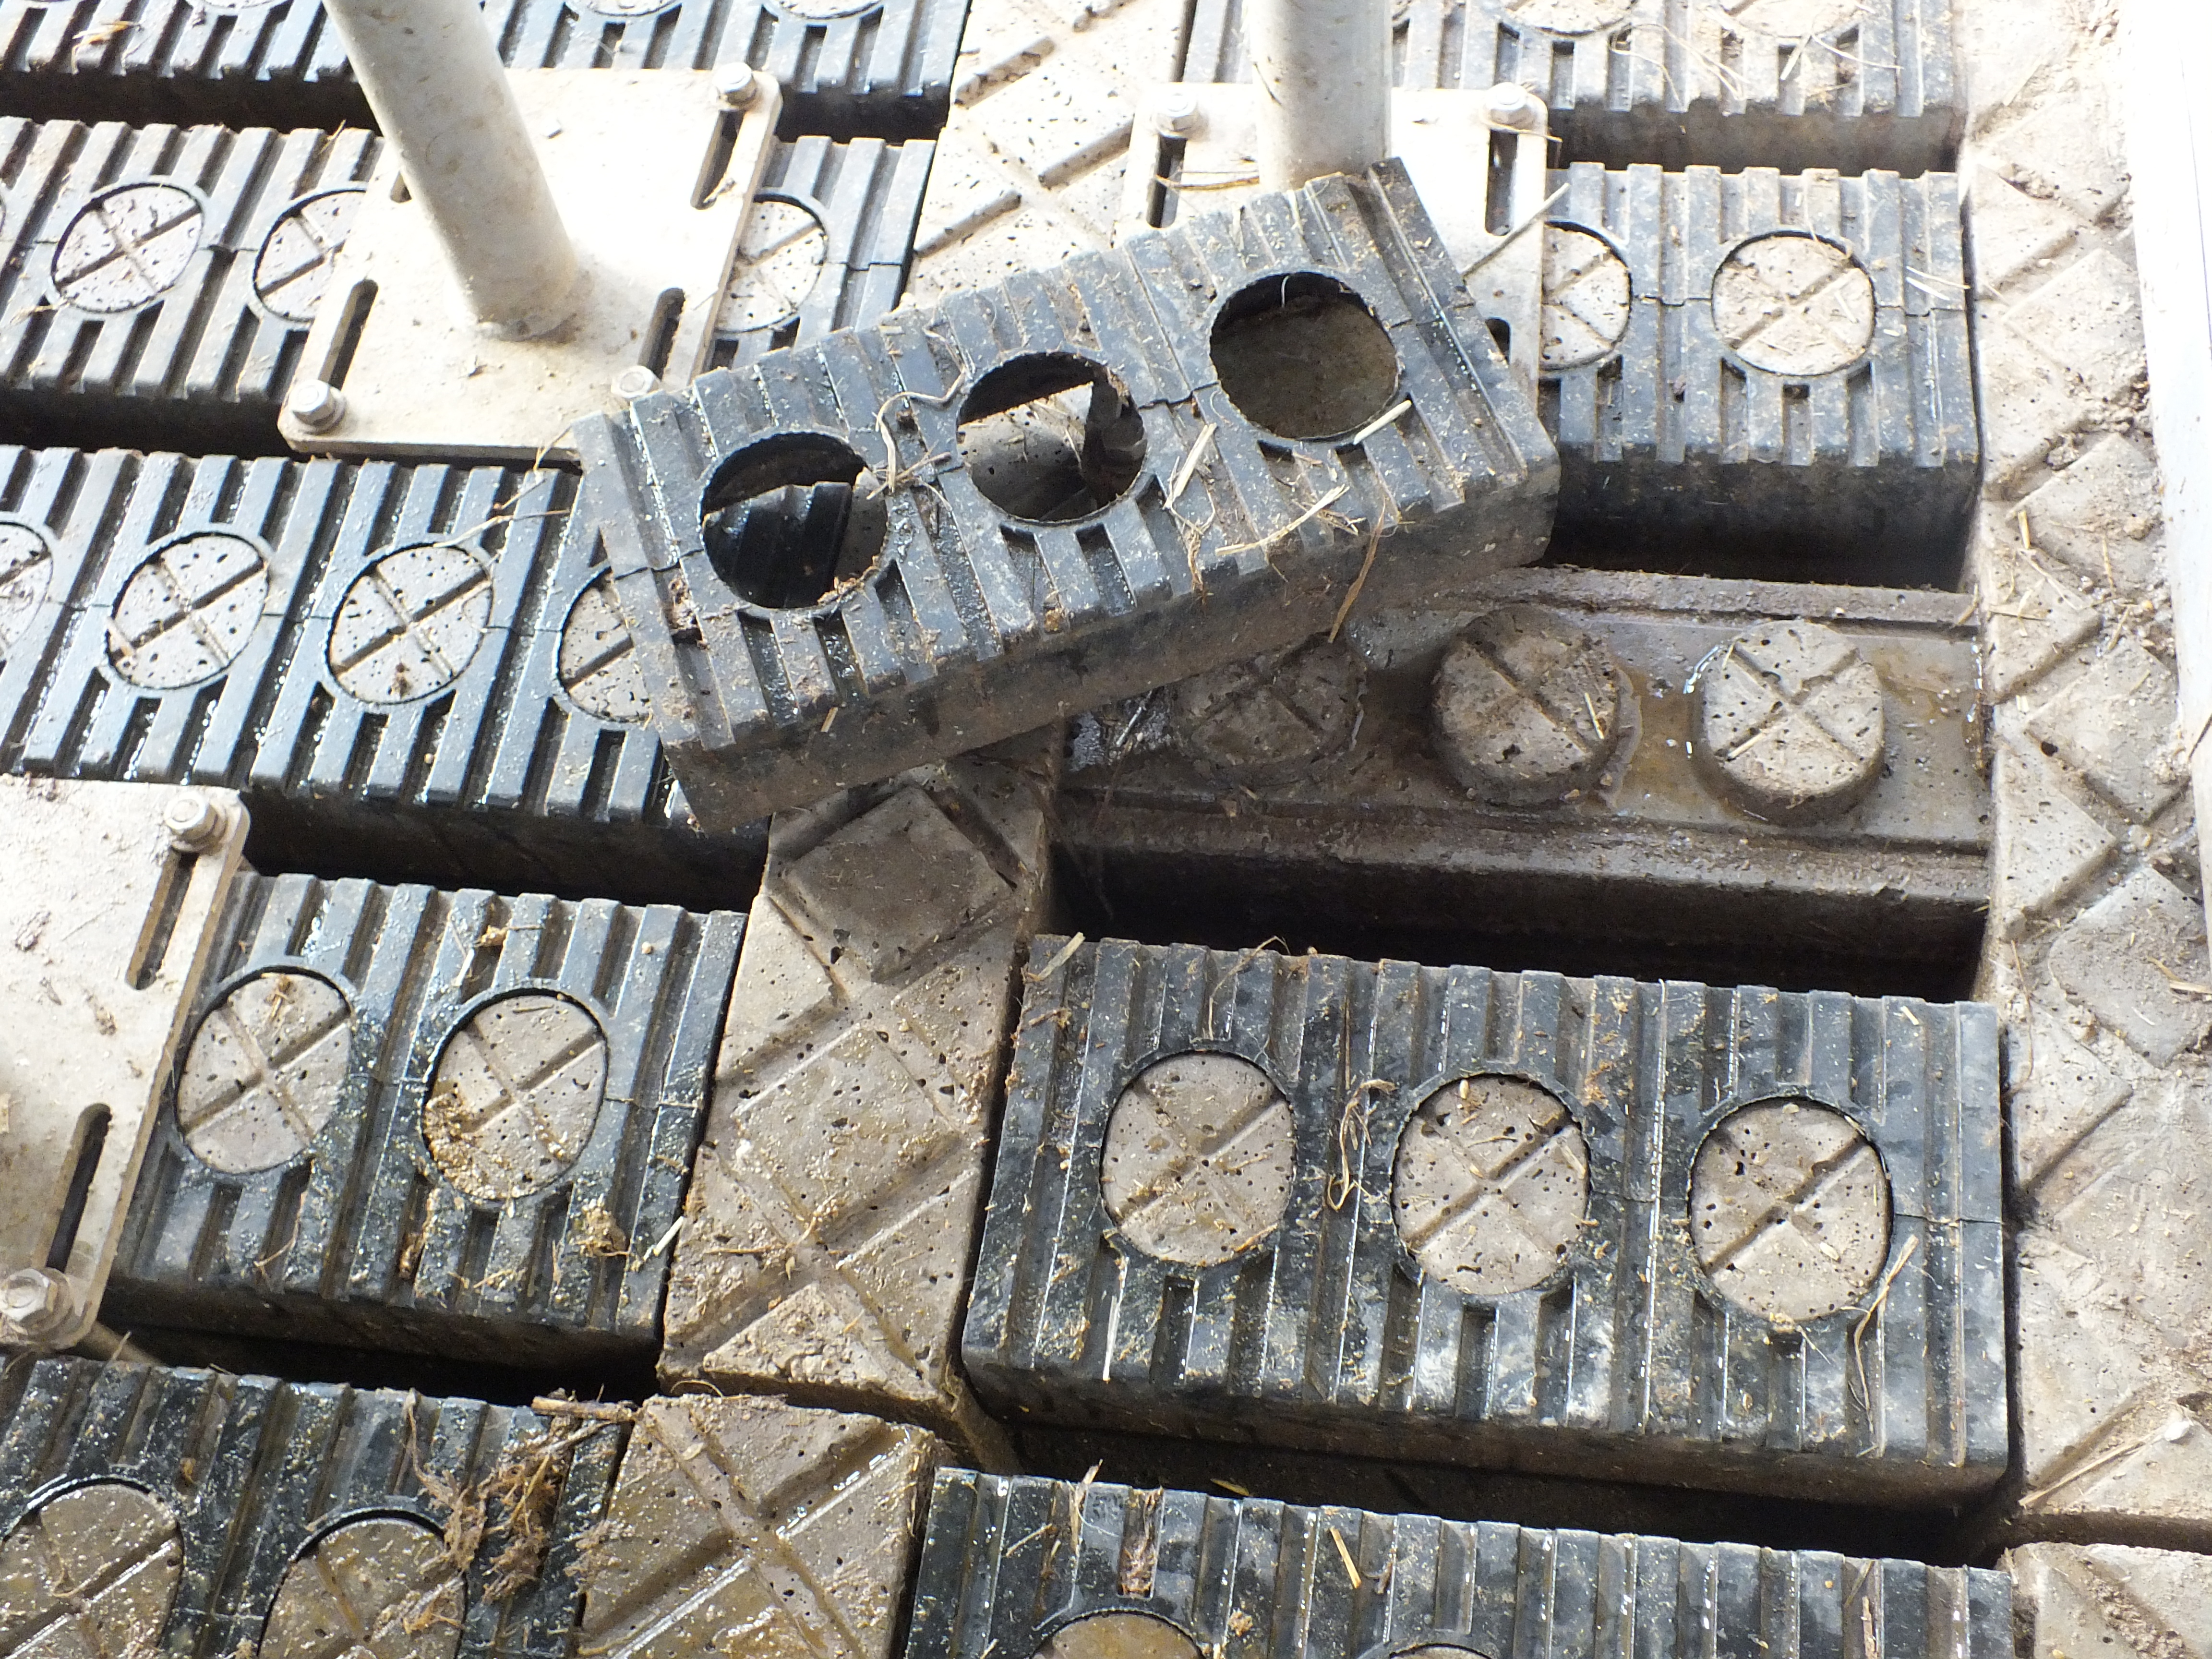 Le béton du caillebotis est recouvert d’éléments en caoutchouc. Photo : A.H.